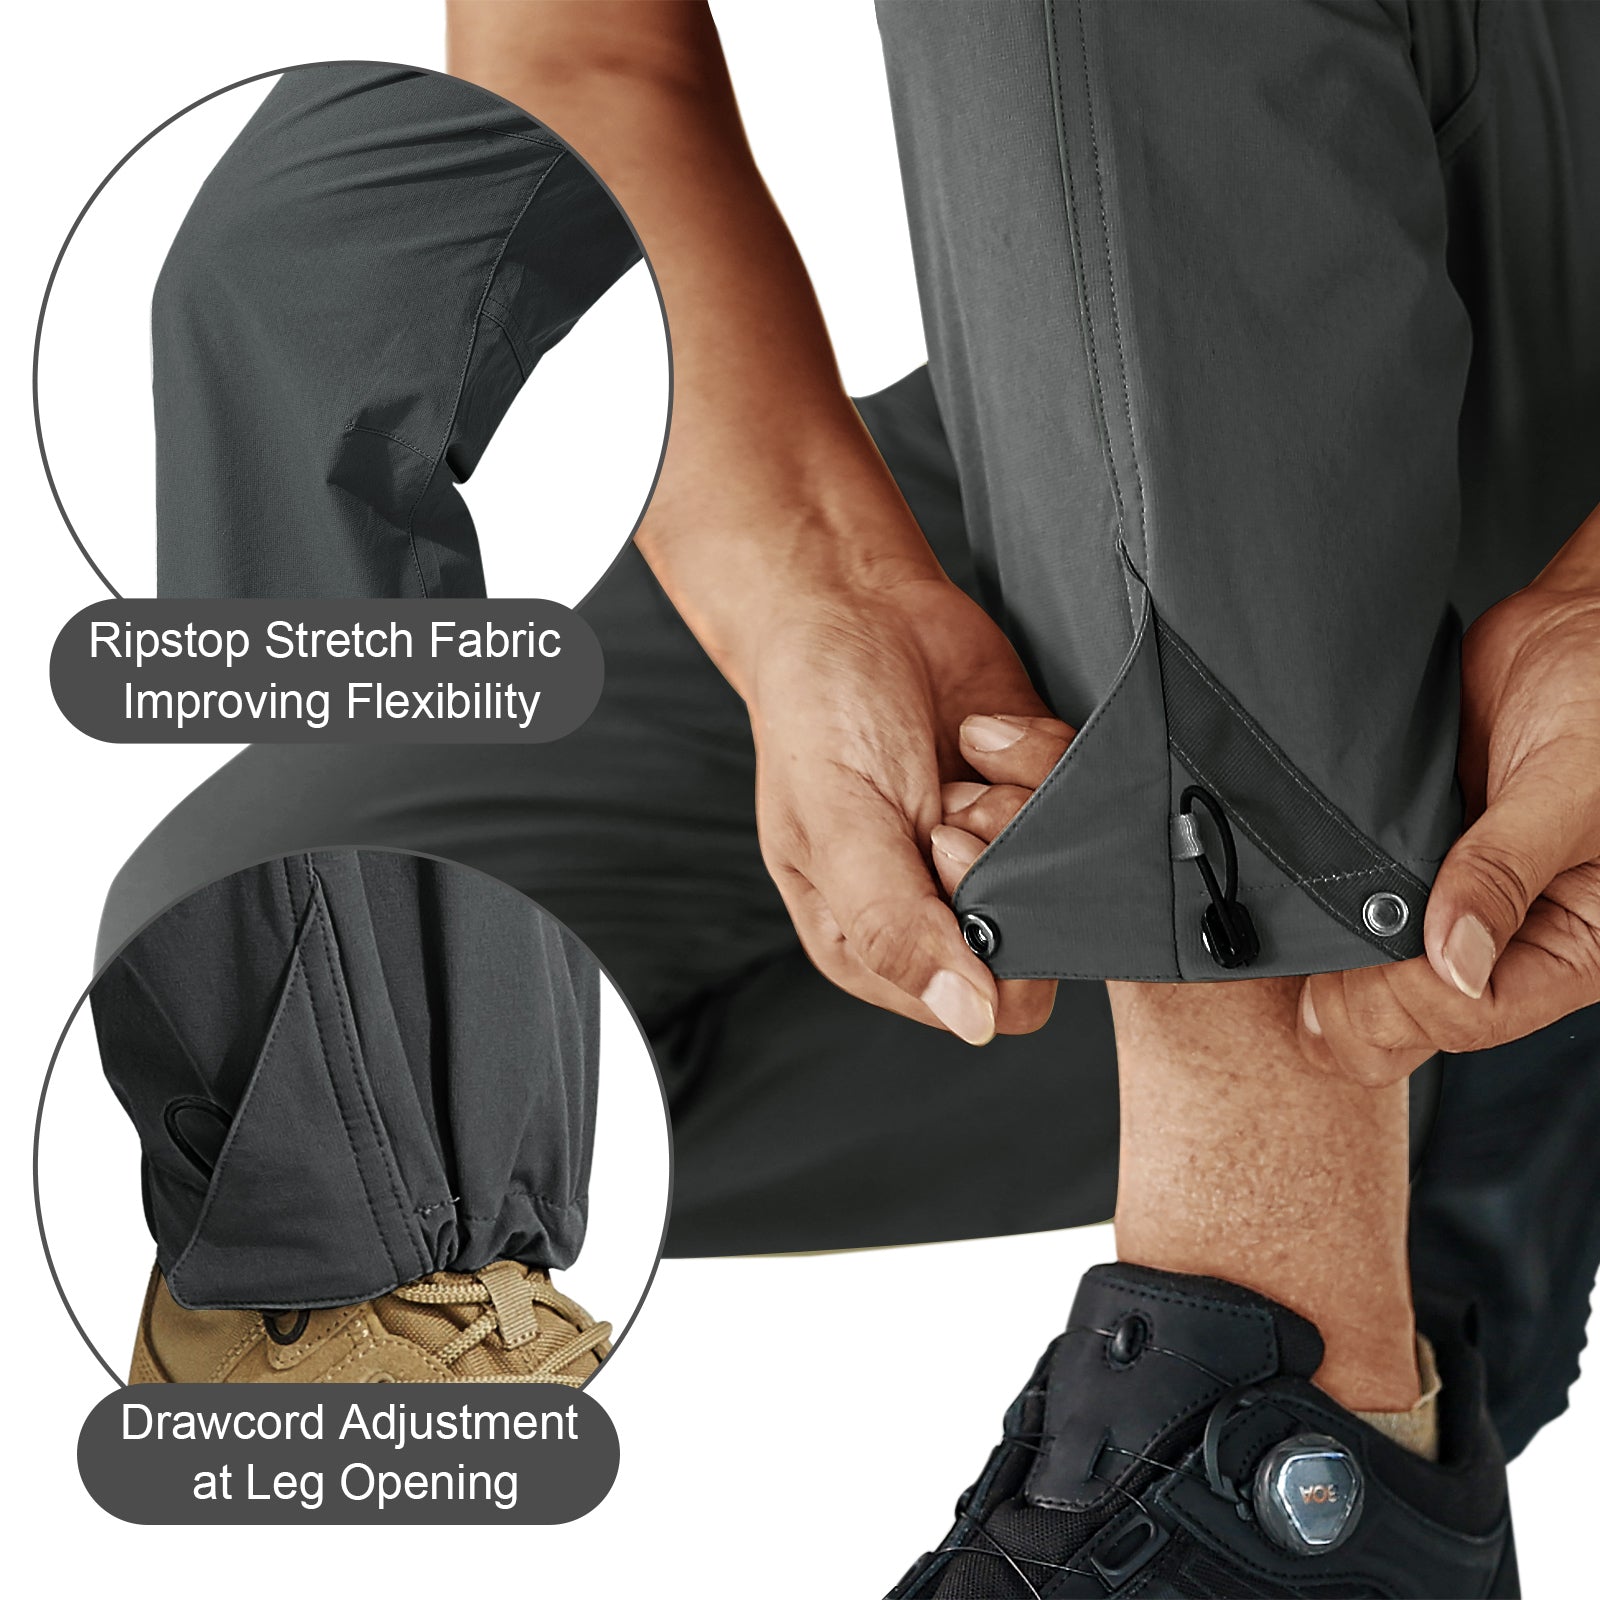 Men Quick Dry Hiking Pants Waterproof & Lightweight